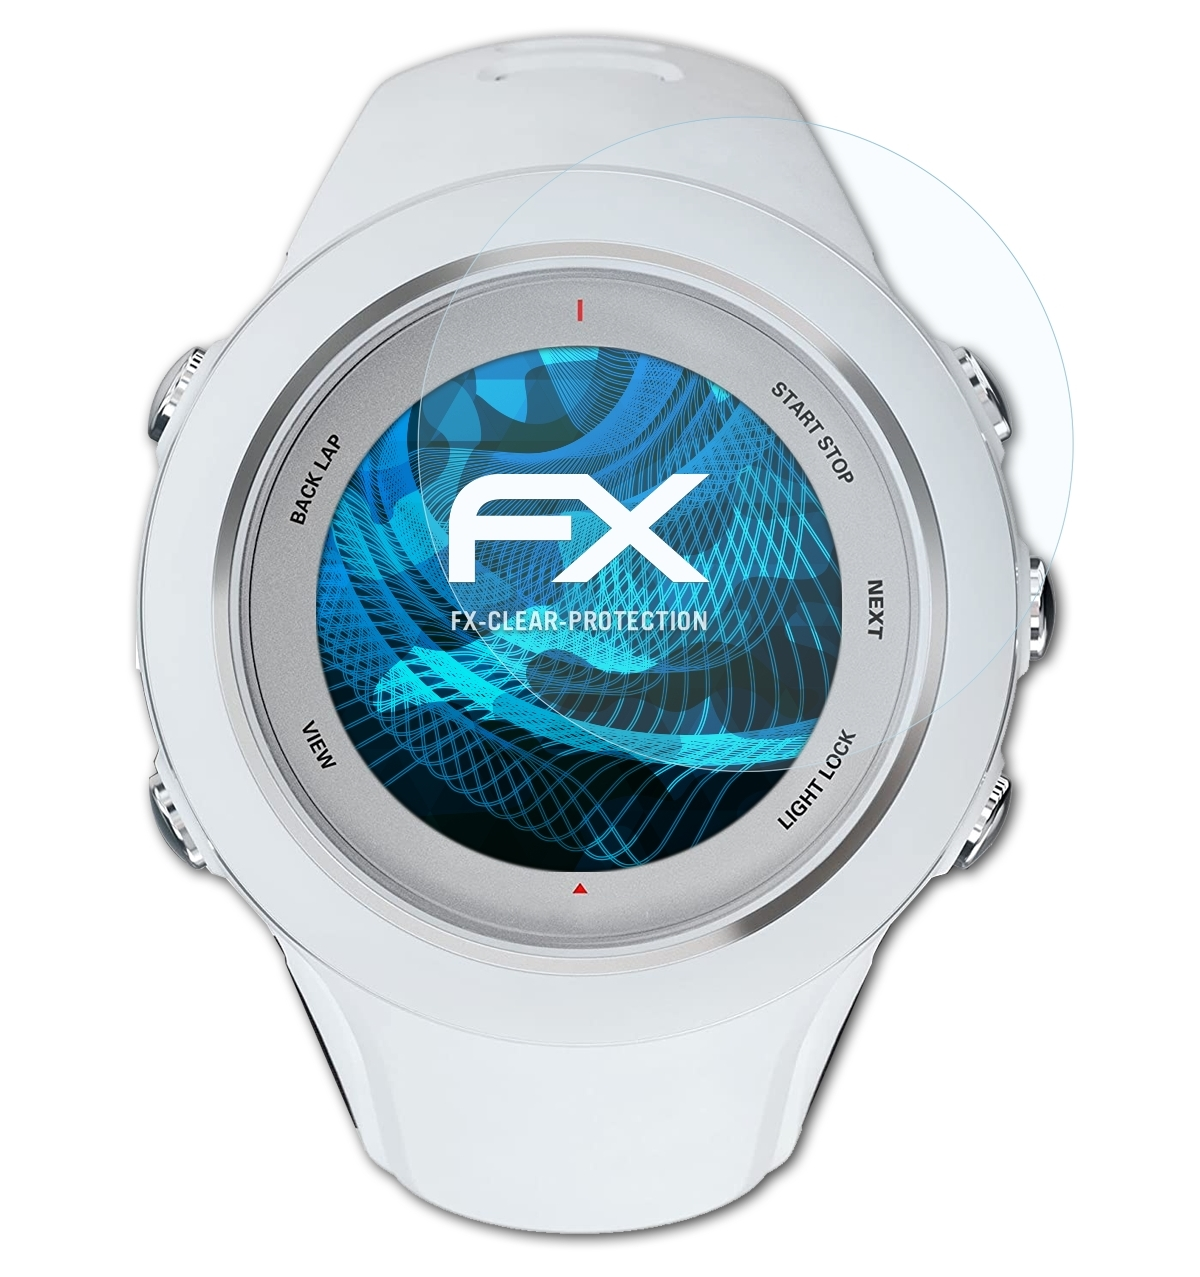 ATFOLIX 3x FX-Clear Displayschutz(für Multisport) Suunto Ambit3